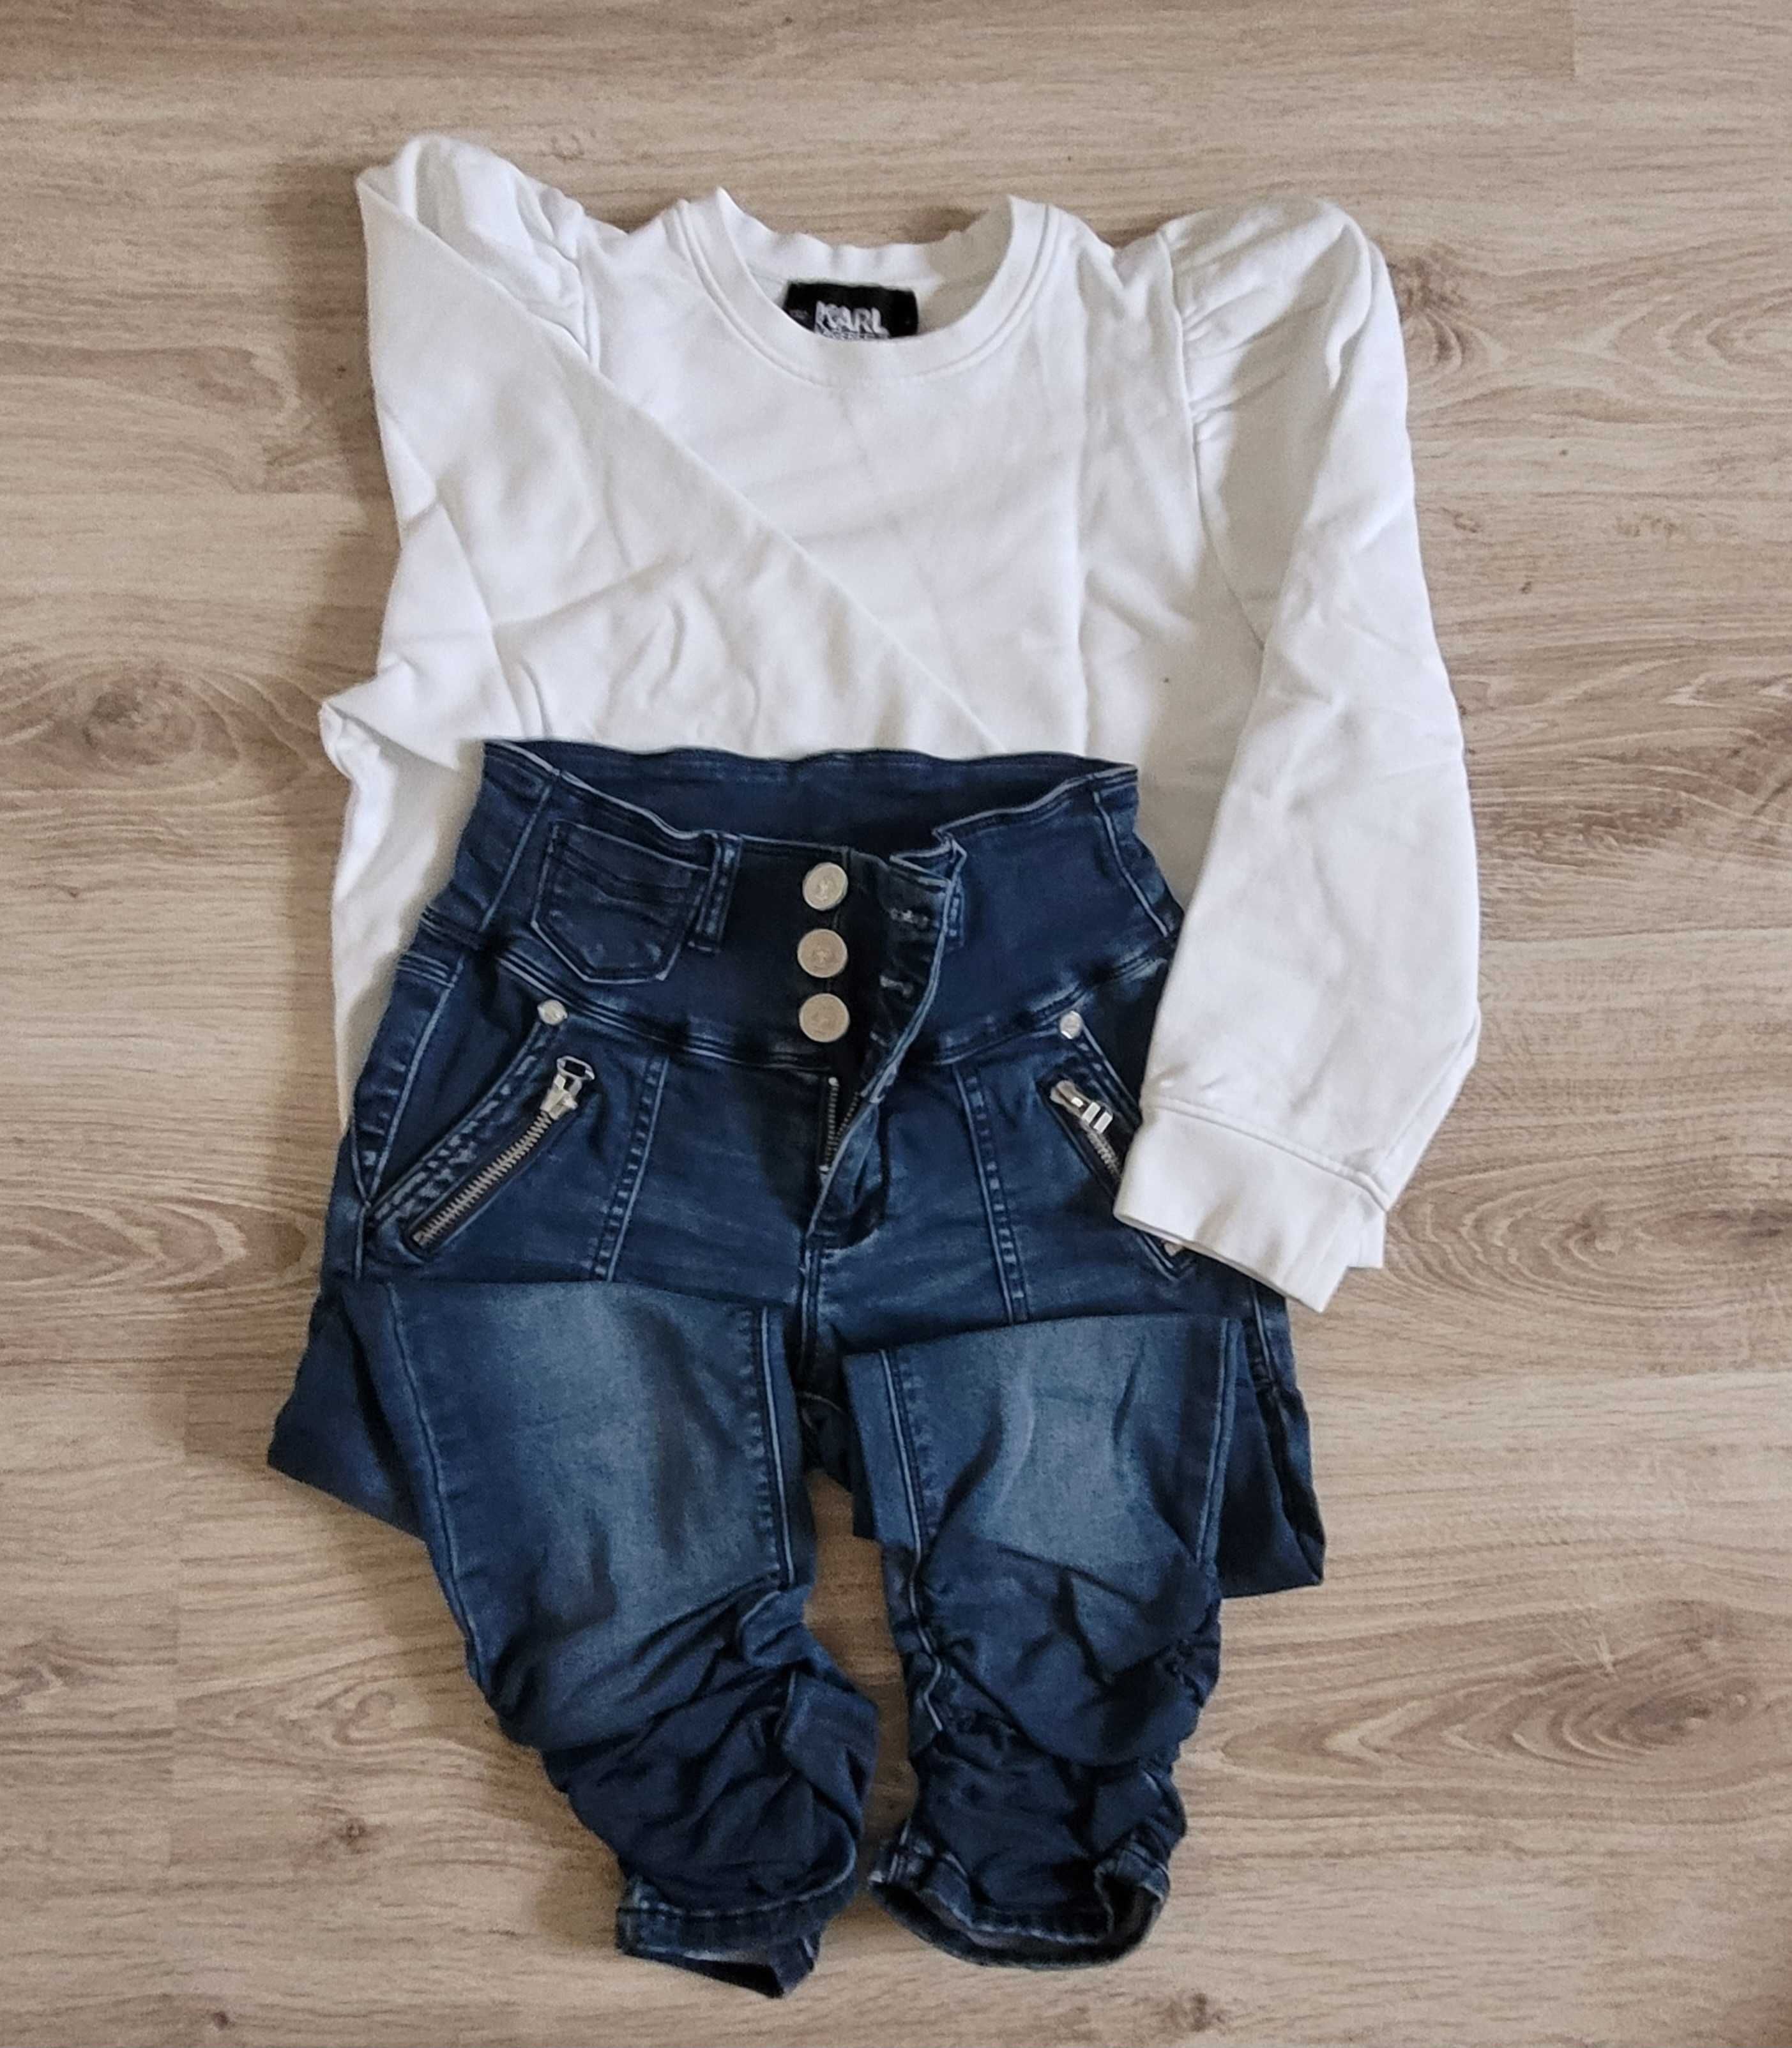 Zestaw ubrań dla dziewczynki na 146 cm Karl Lagerfeld bluza + dżinsy